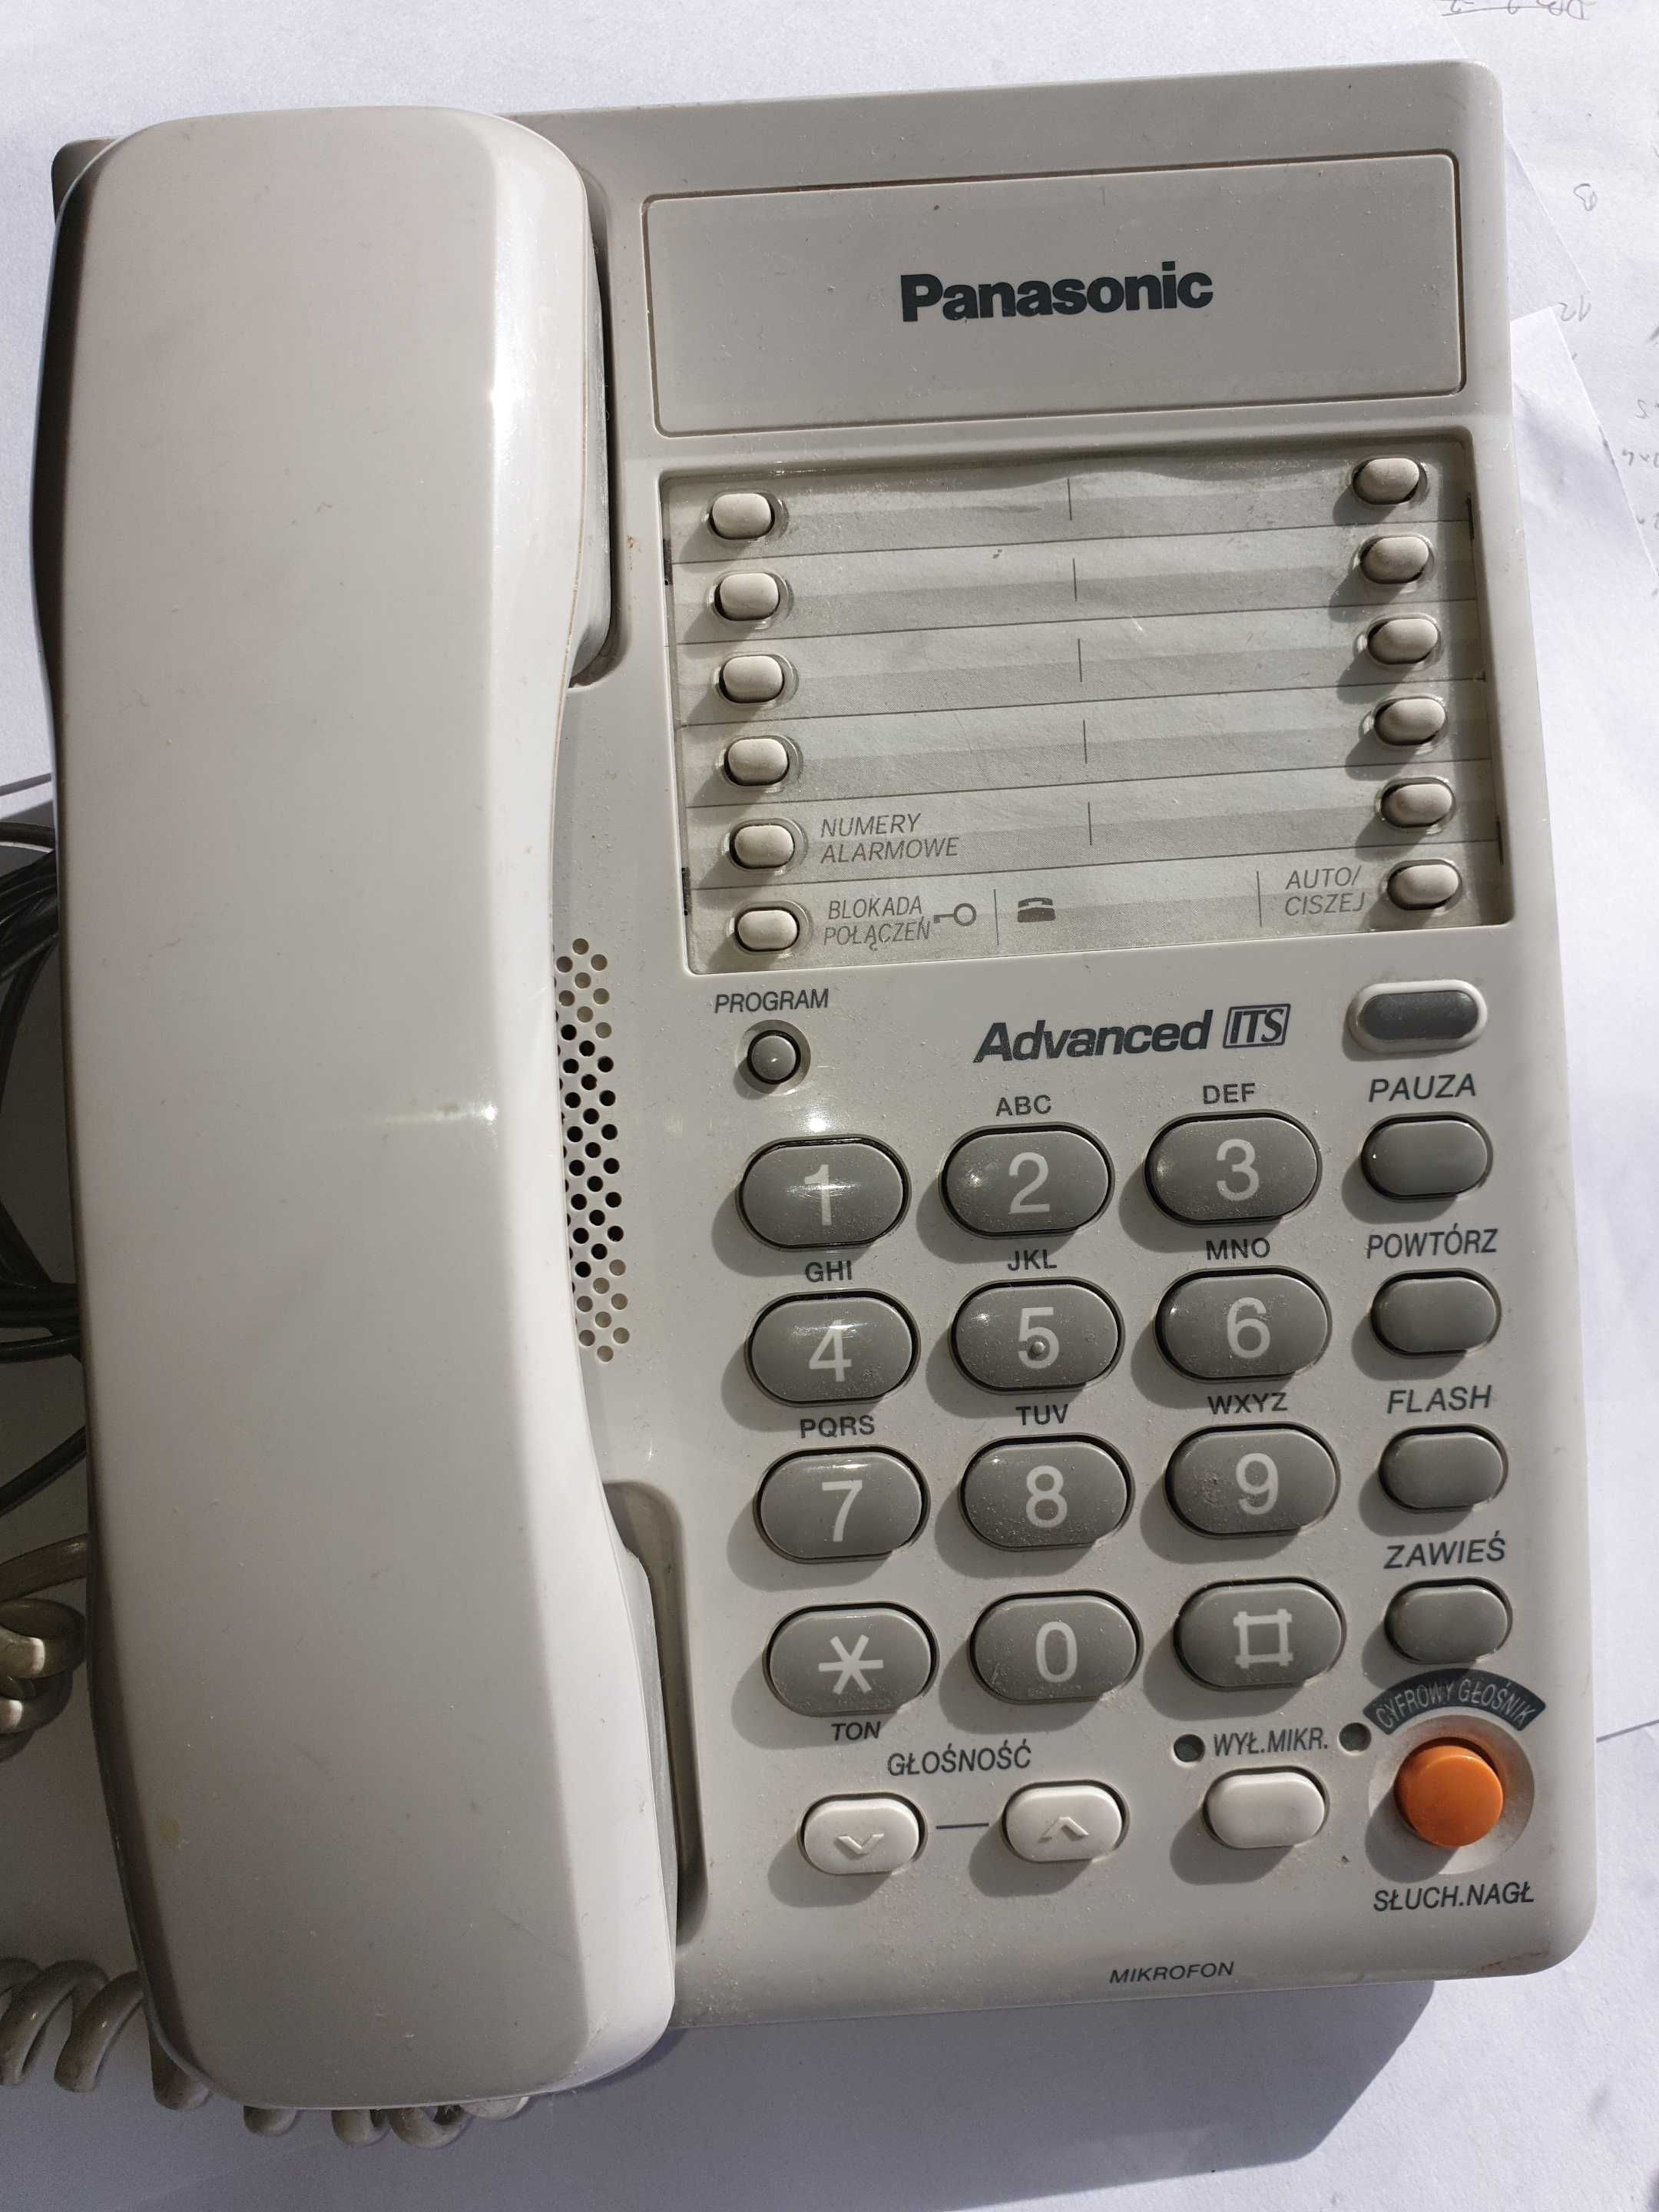 Telefon stacjonarny Panasonic, idealny do biura !